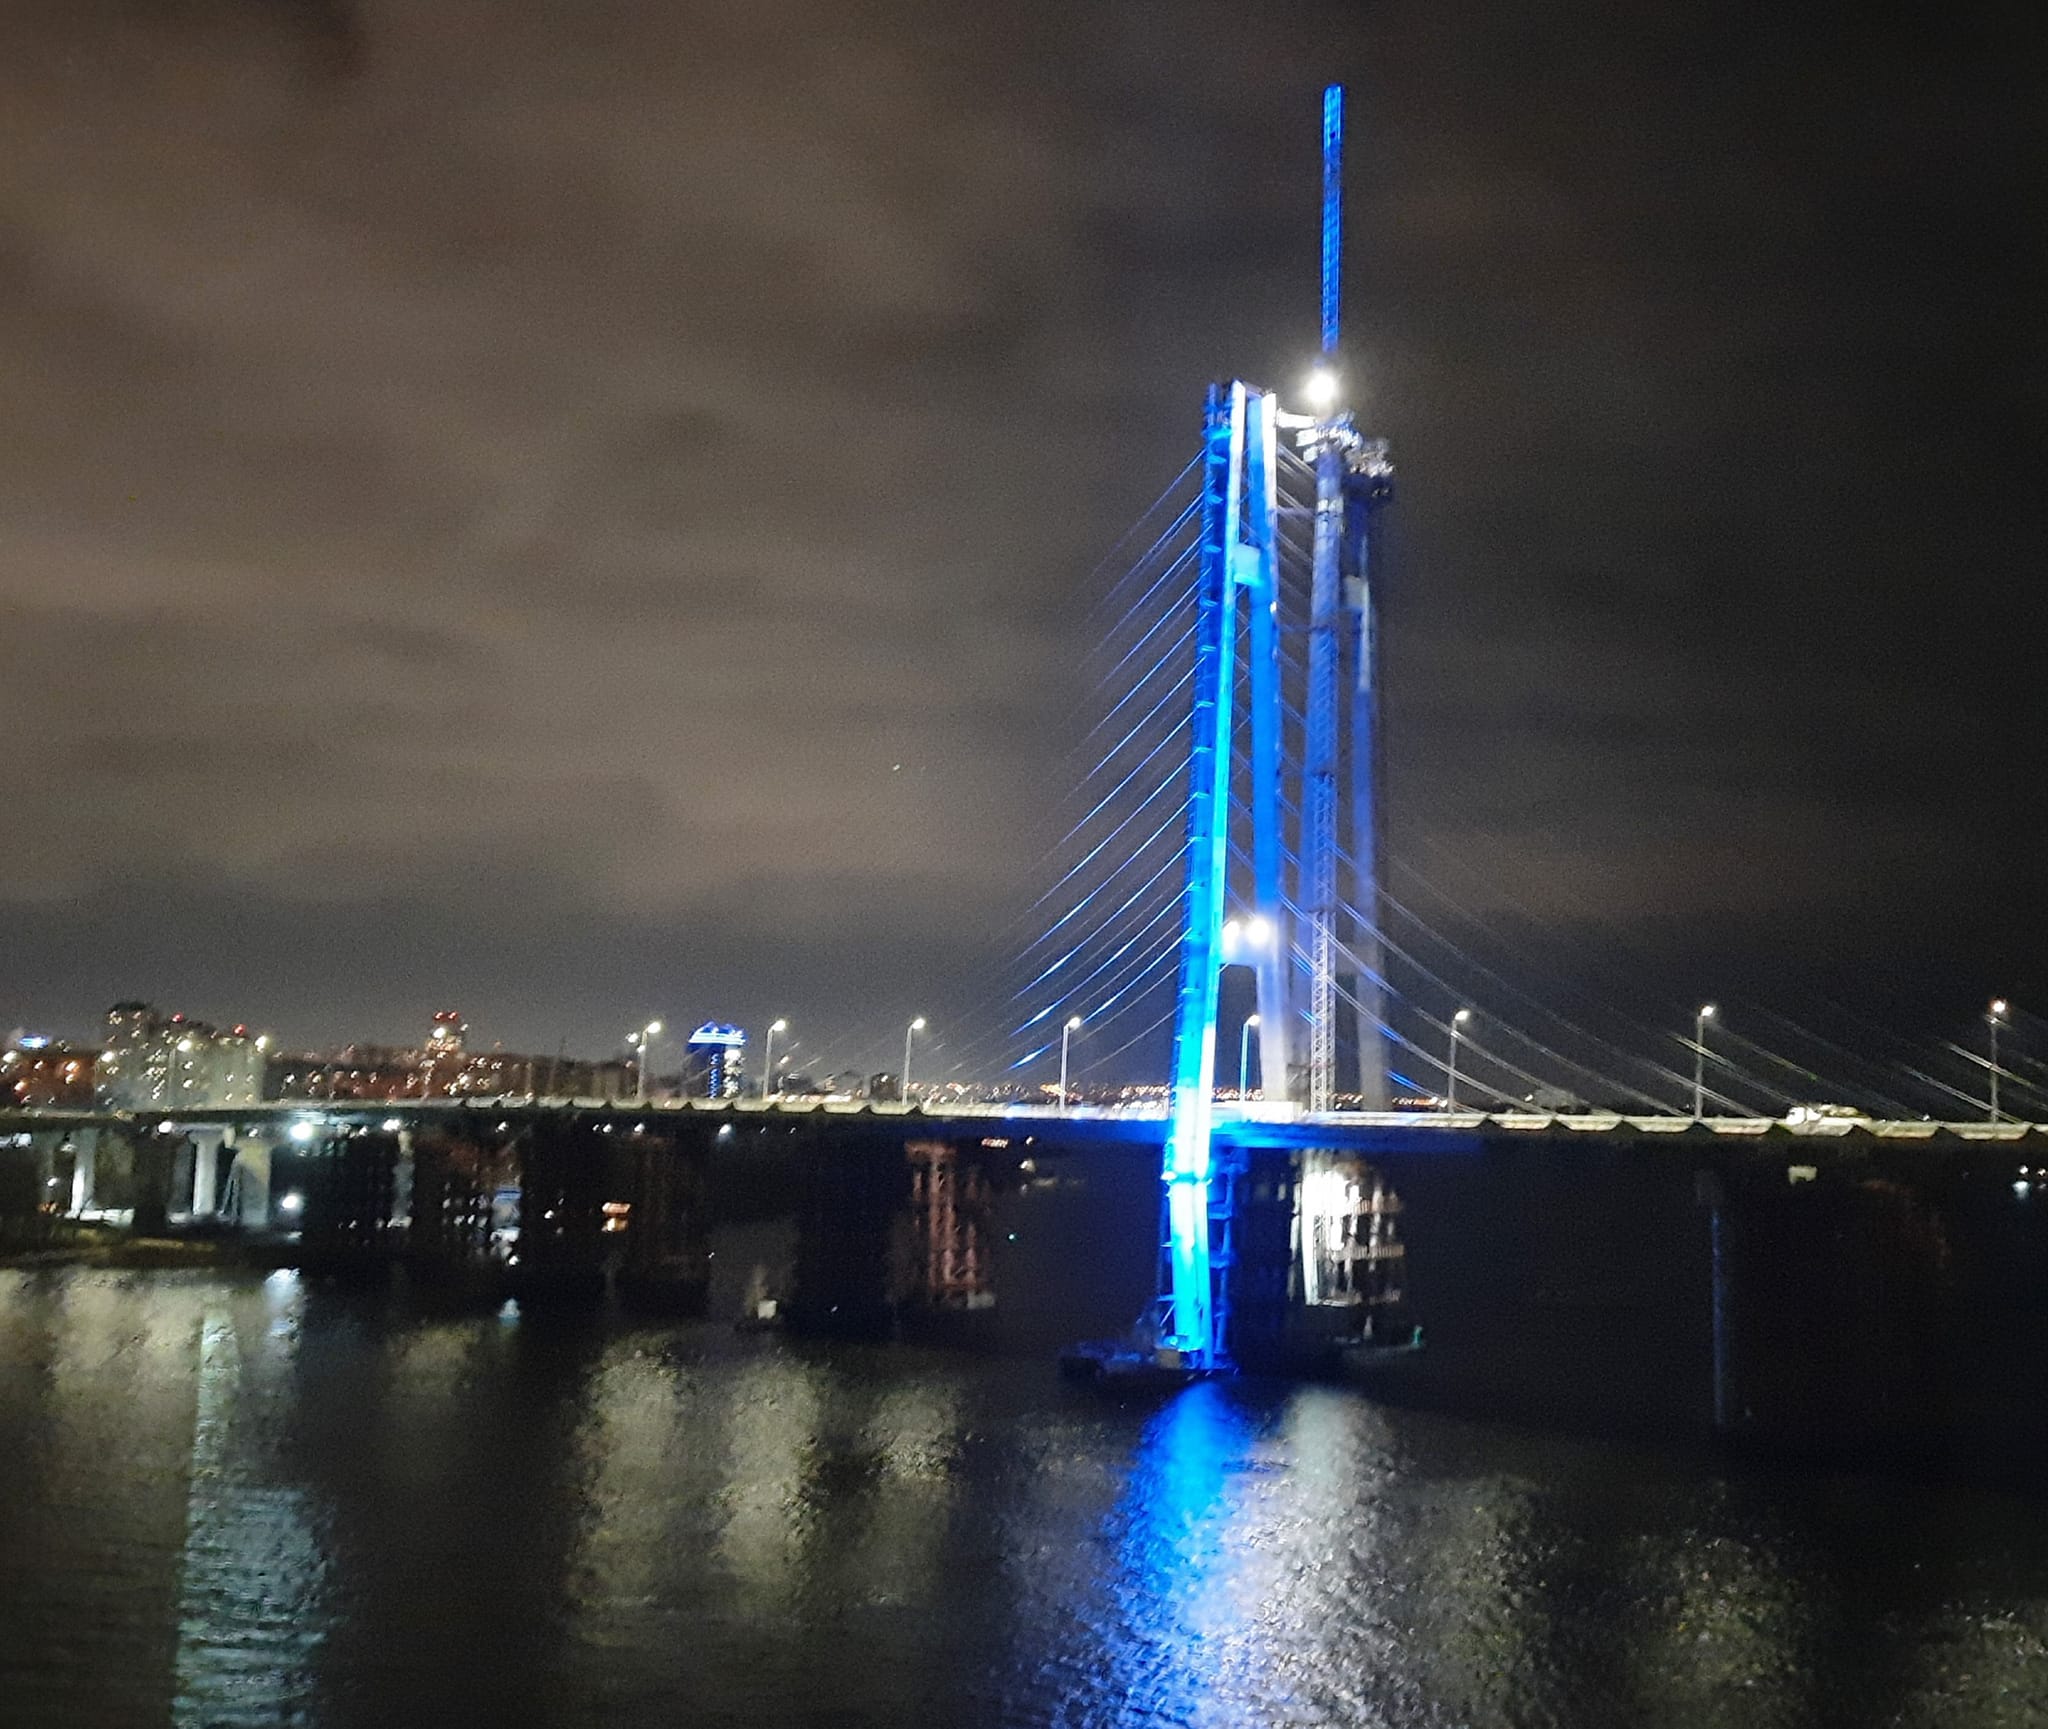 В Запорожье вантовый мост будут освещать разноцветной LED–подсветкой: как это будет выглядеть (ФОТО)